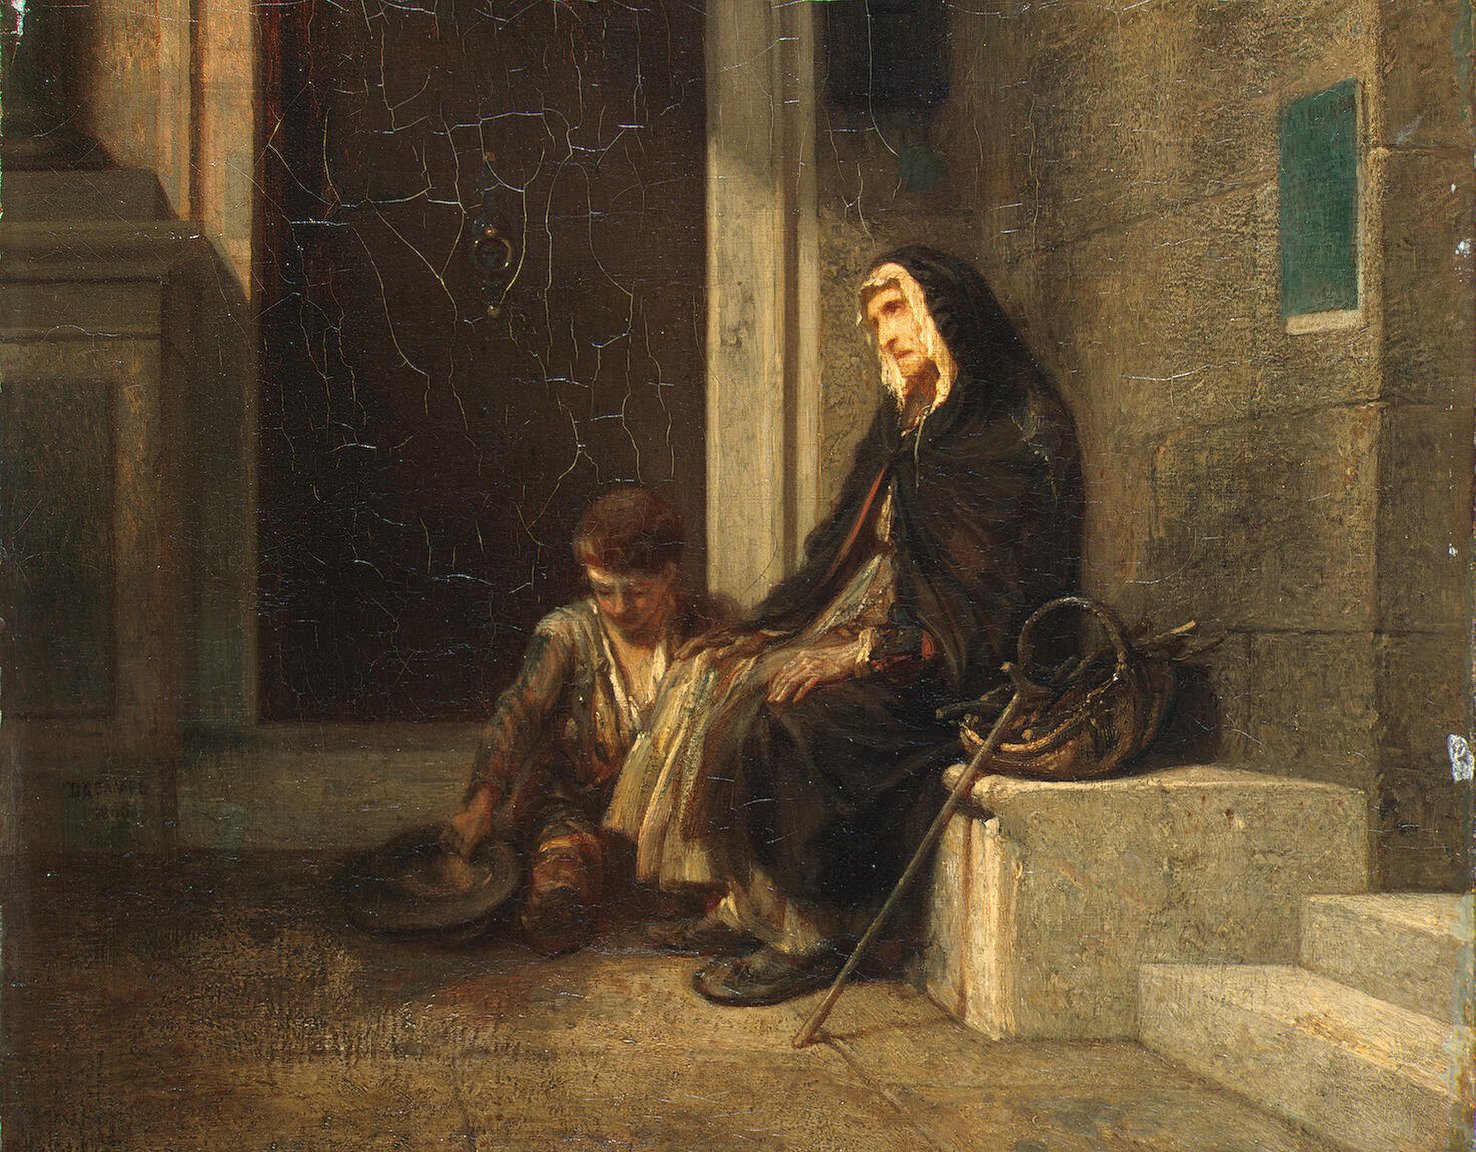 Александр Габриель Декан. "Нищие". 1845.